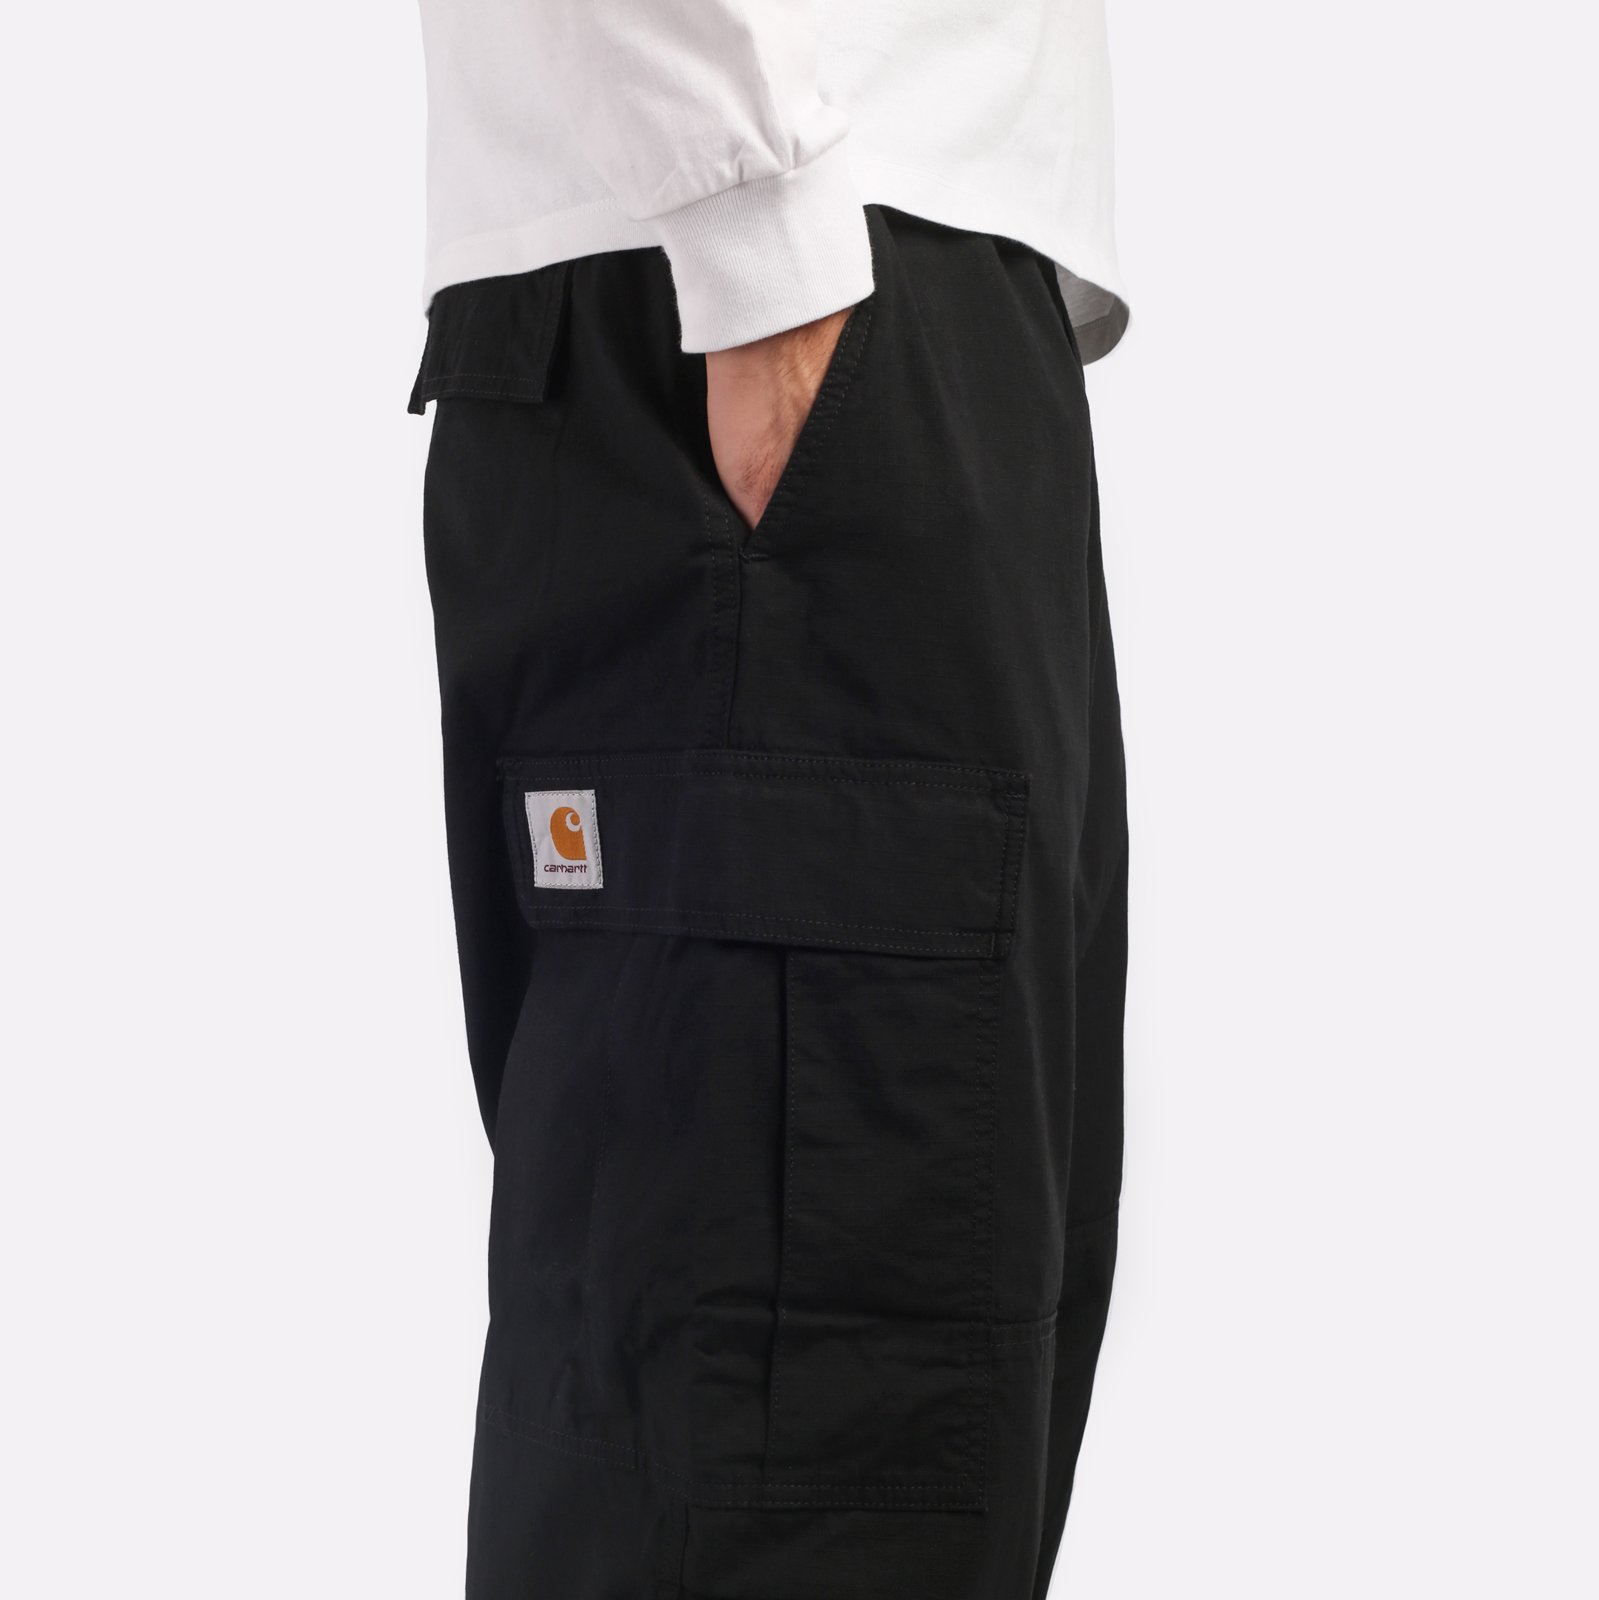 мужские брюки Carhartt WIP Jet Cargo Pant  (I032967-black)  - цена, описание, фото 4